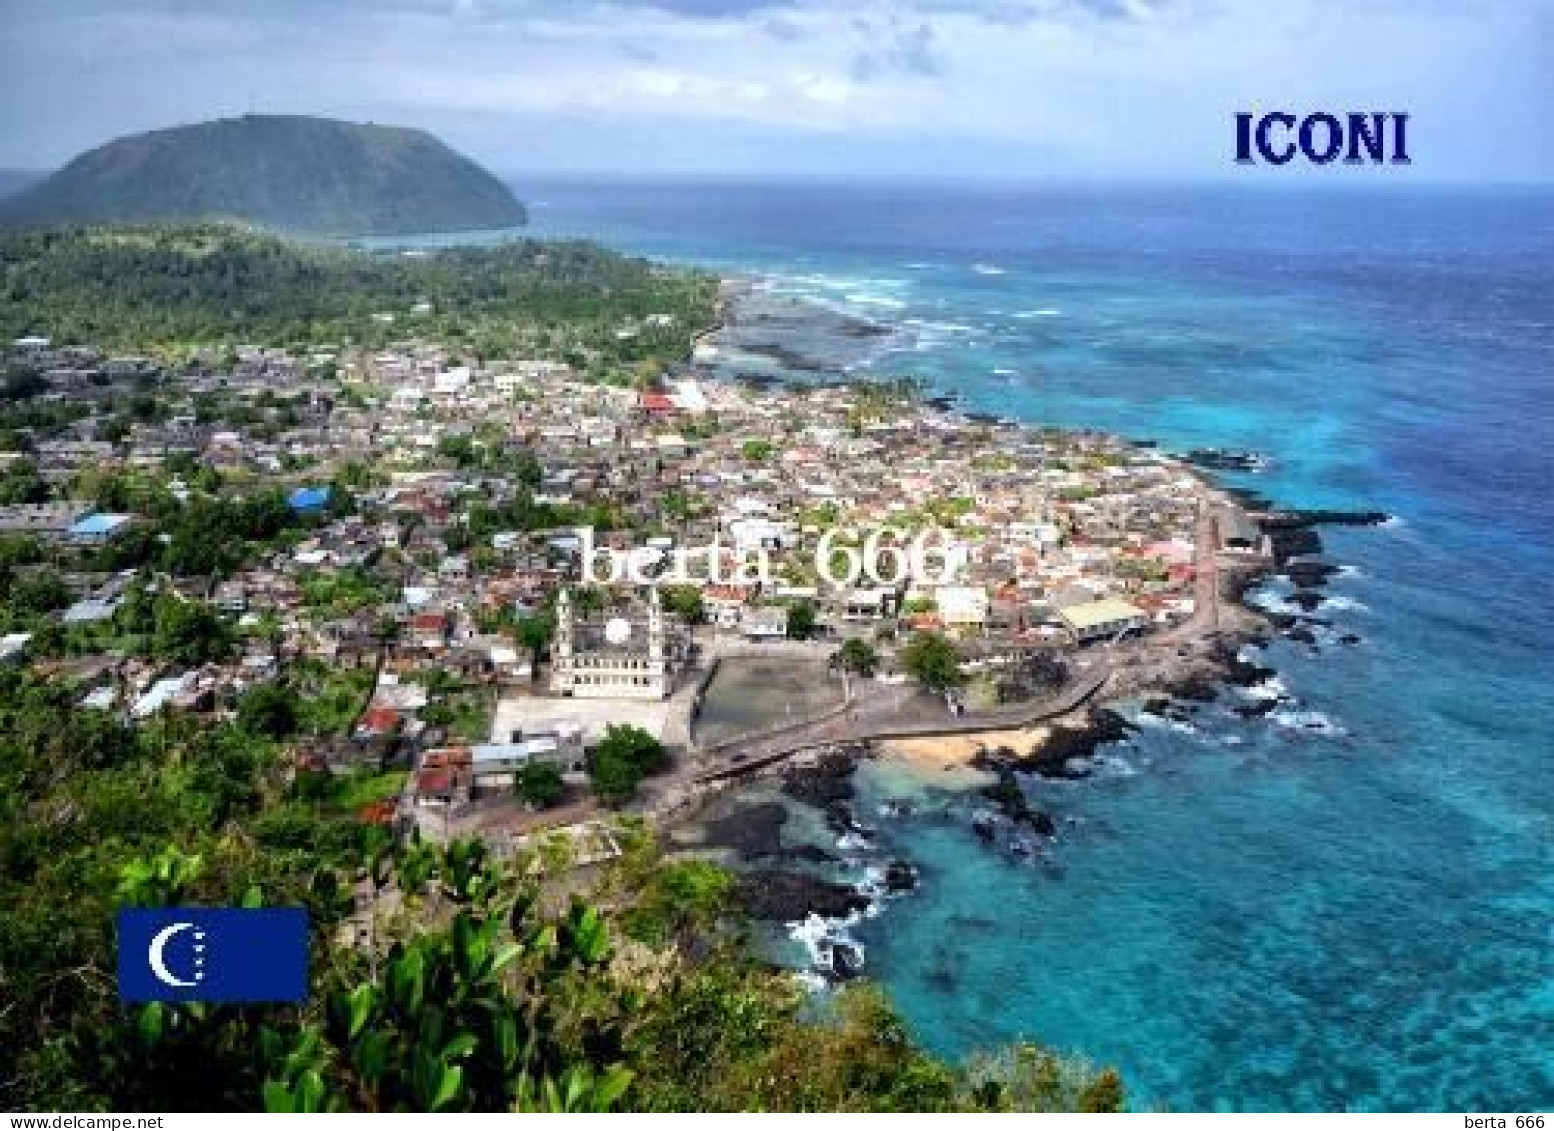 Comoros Grande Comore Iconi Aerial View Comores New Postcard - Comoros